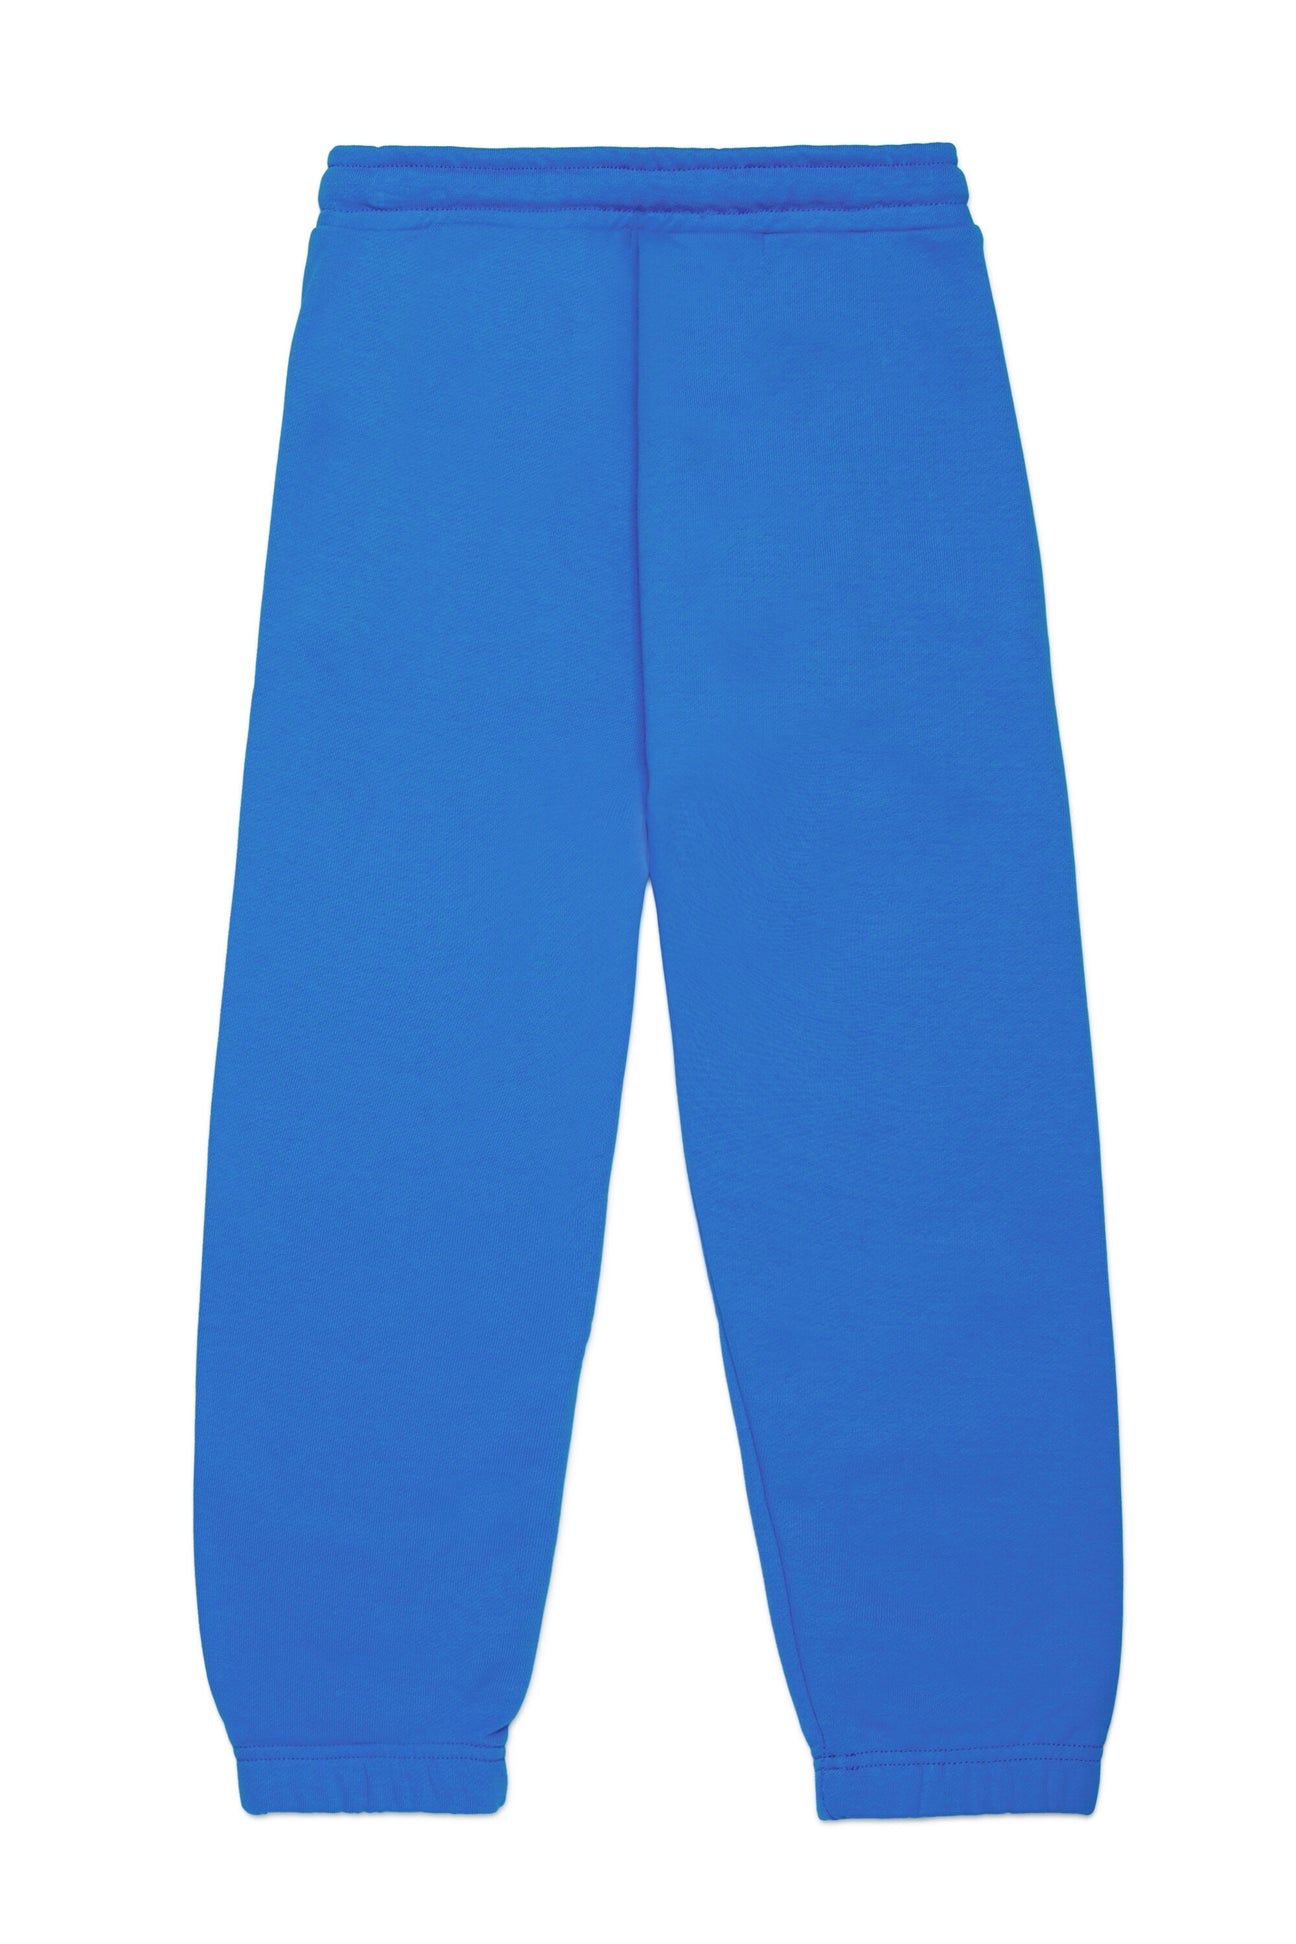 Pantalones deportivos con estampado puffy en chándal Pantalones deportivos con estampado puffy en chándal